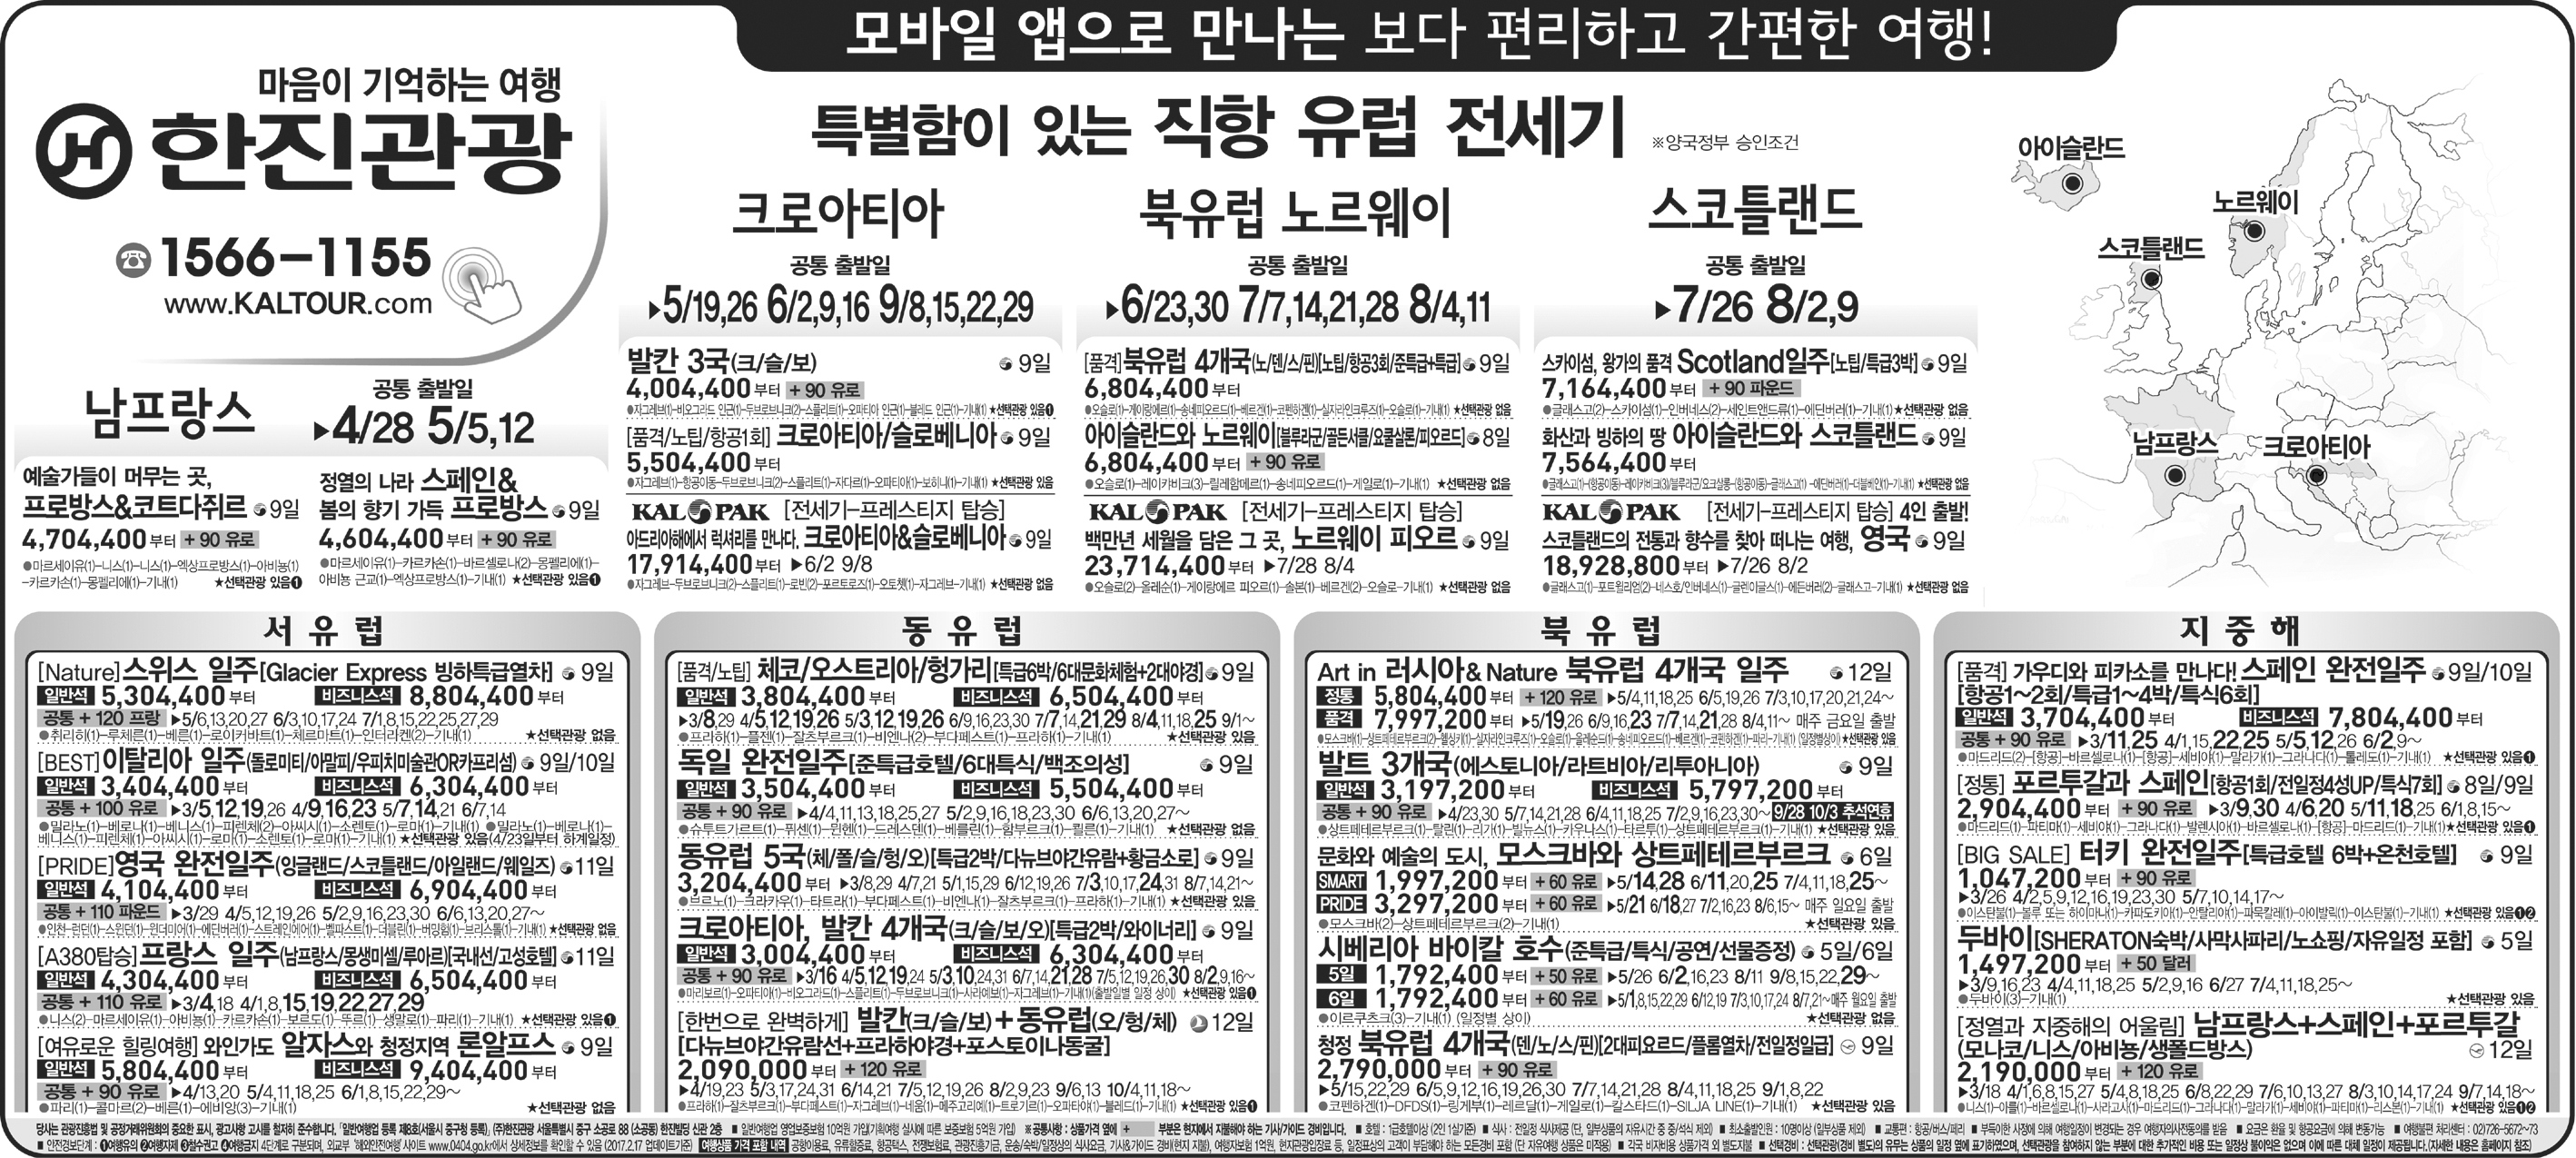 조선일보 [2017.02.20 월요일]